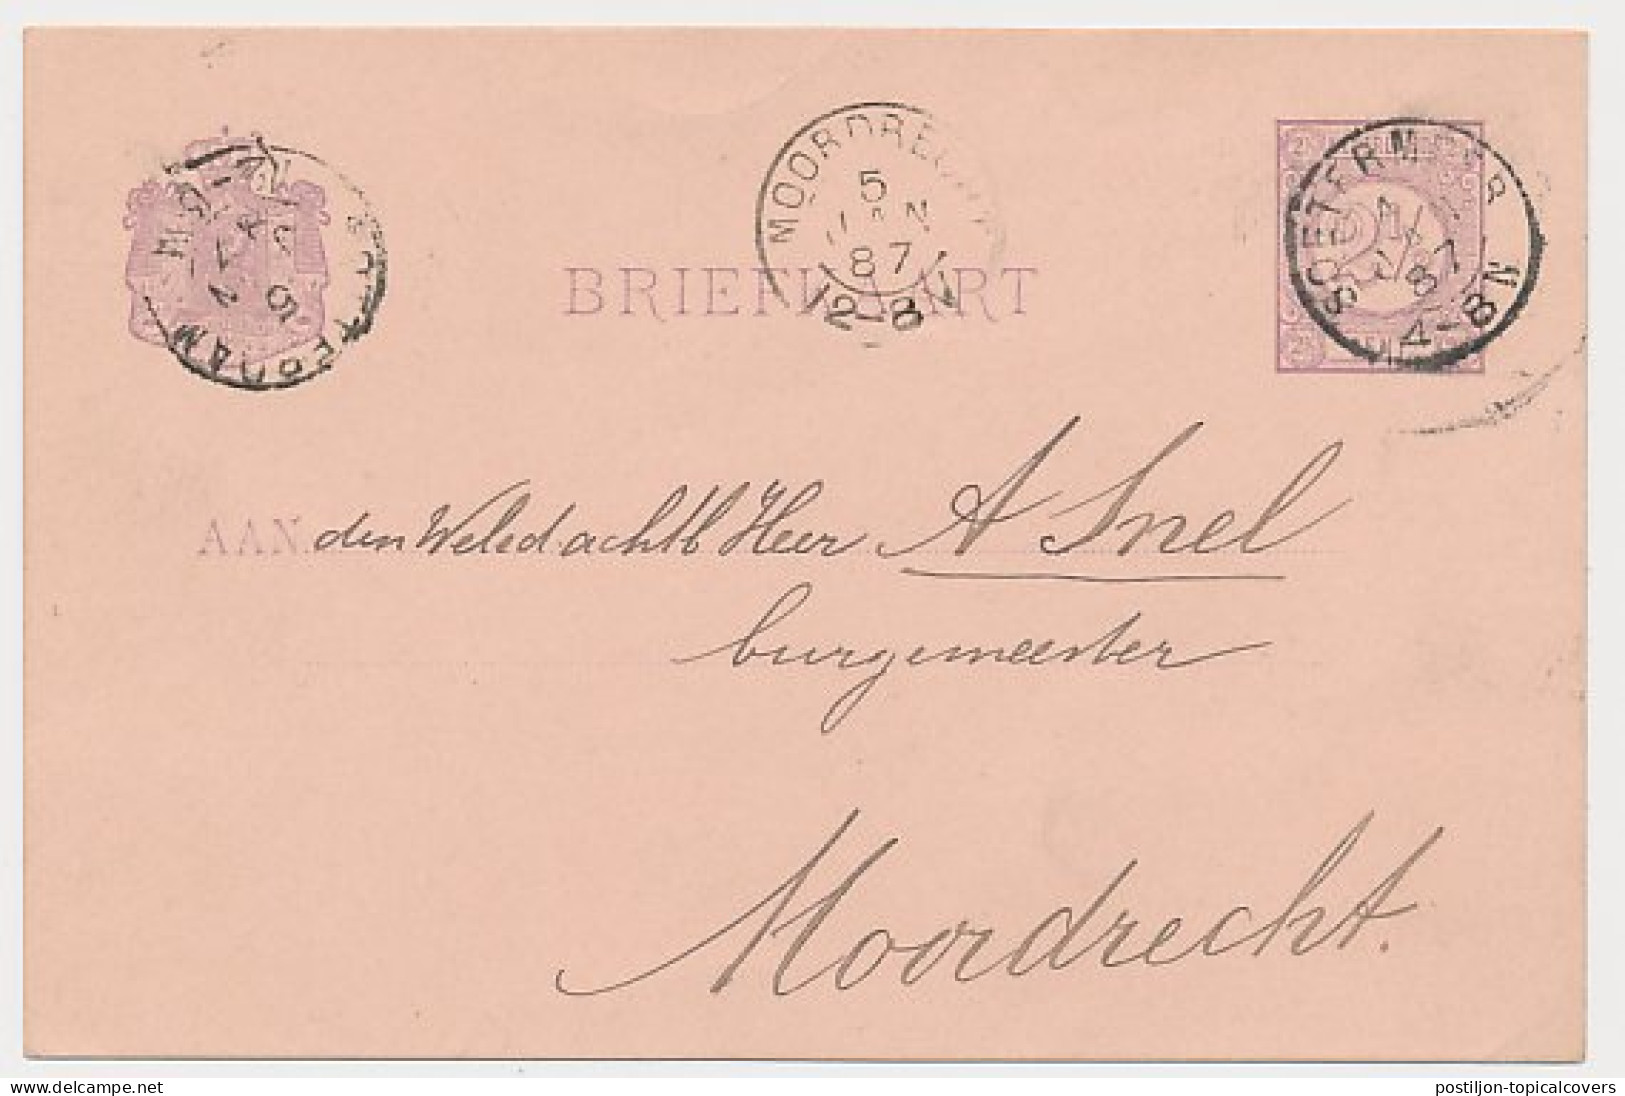 Kleinrondstempel Soetermeer 1887 - Unclassified